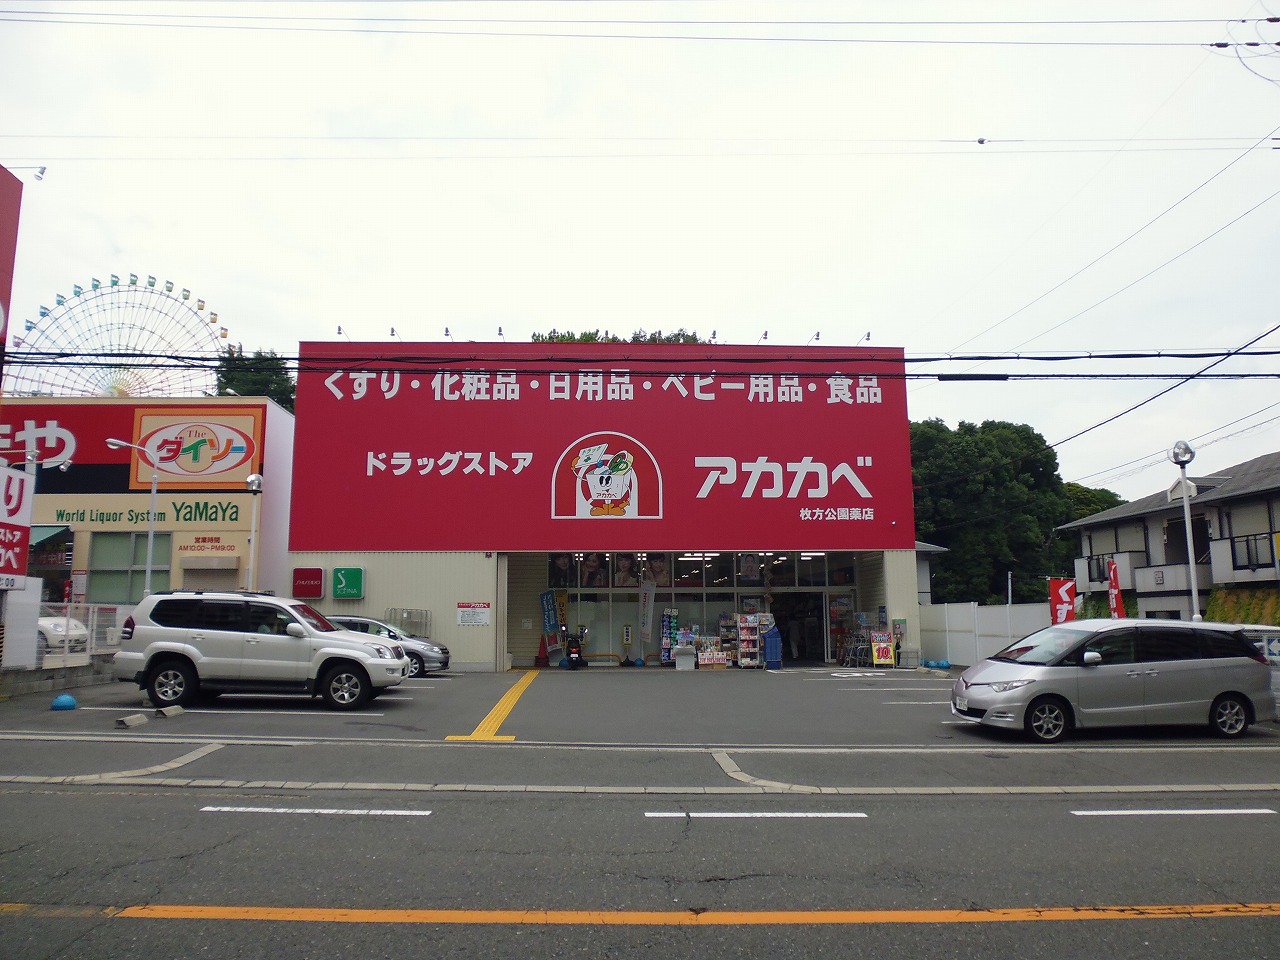 Dorakkusutoa. Drugstores Red Cliff Hirakatakoen shop 1052m until (drugstore)